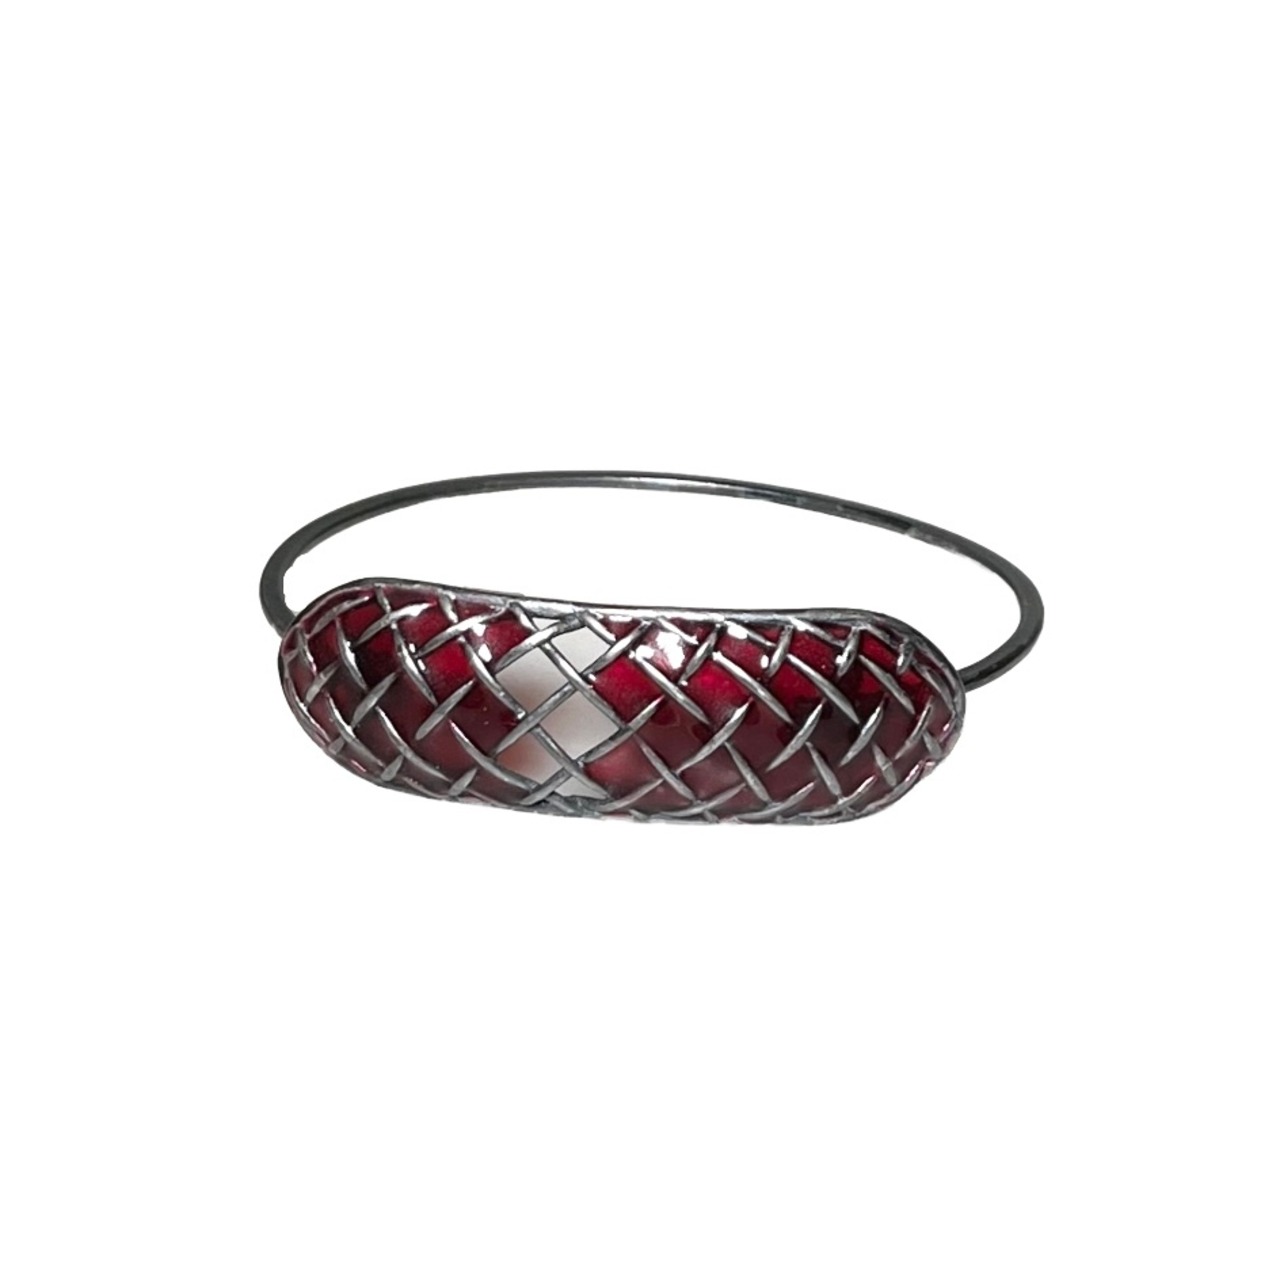 BOTTEGA VENETA silver intrecciato bracelet with red enamel